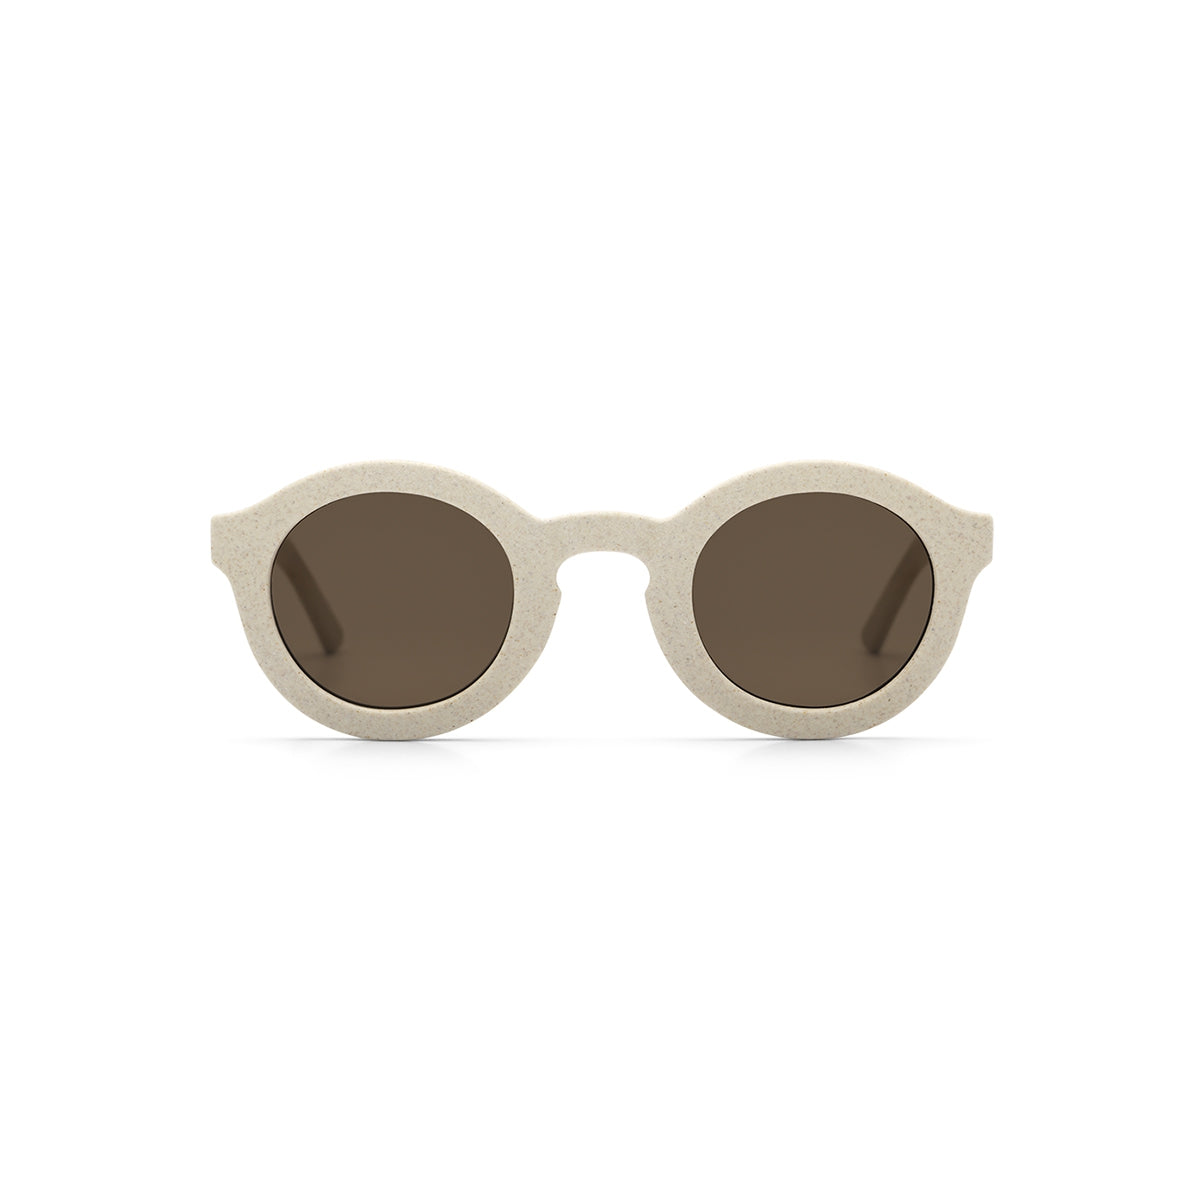 Kindersonnenbrille - Cream 01 | Vanilla